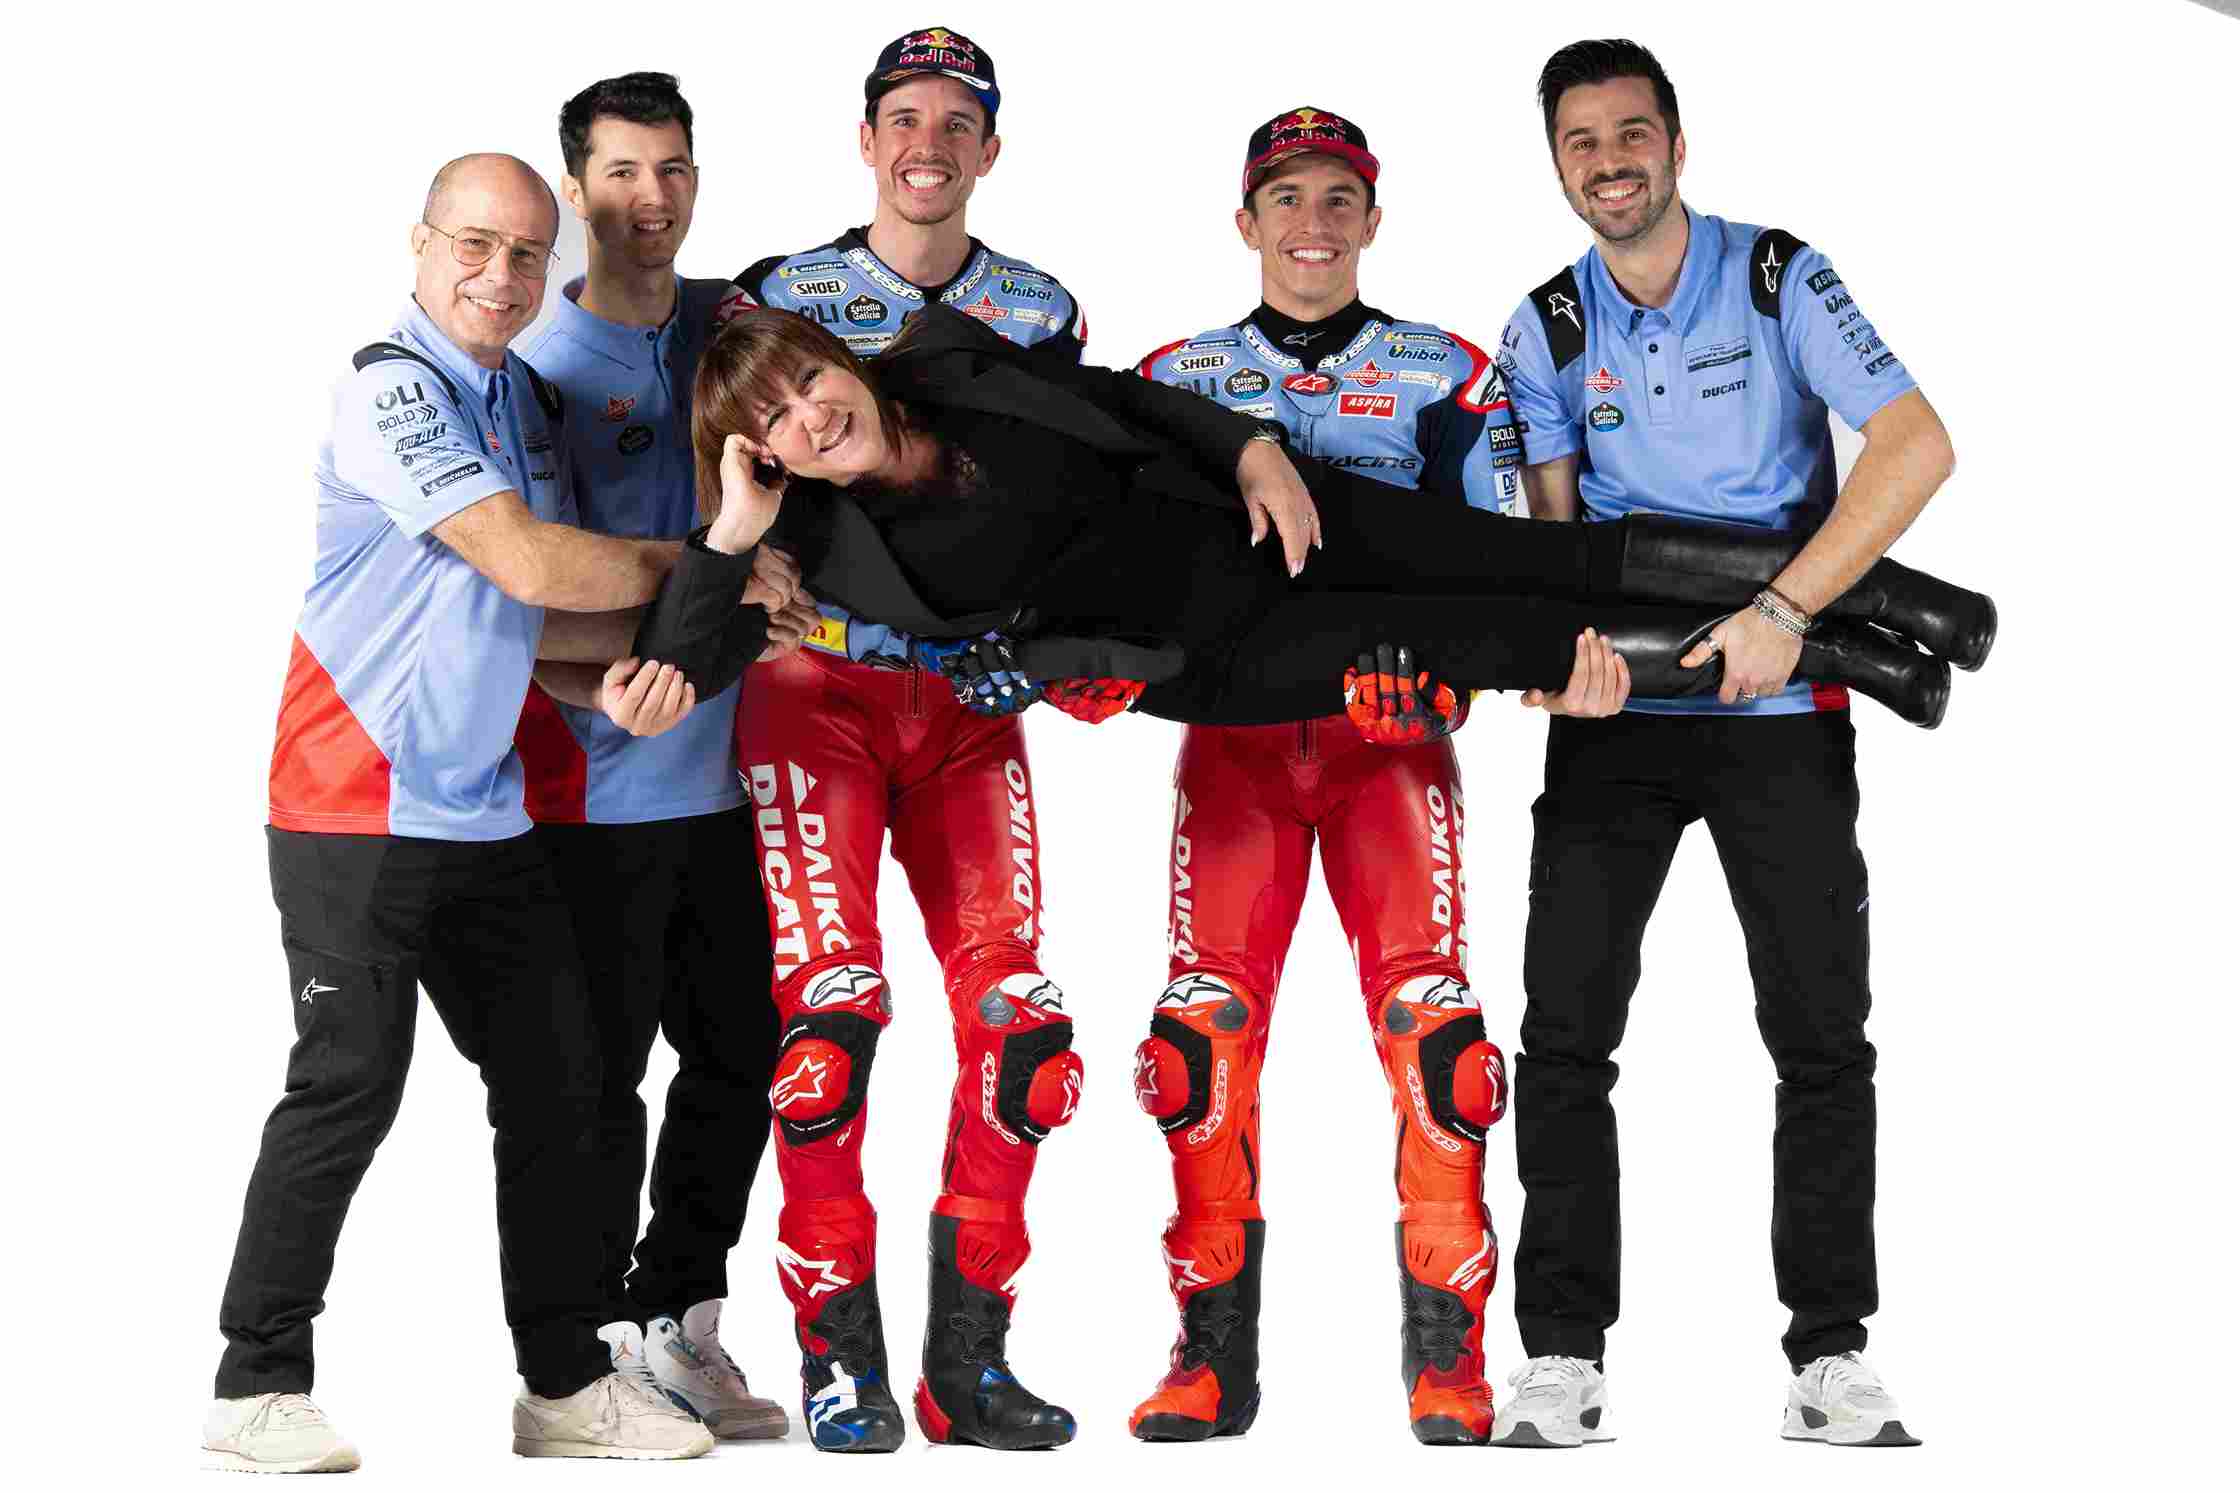 Tim Pendukung dan Manajemen Gresini Racing, Nadia Padovani